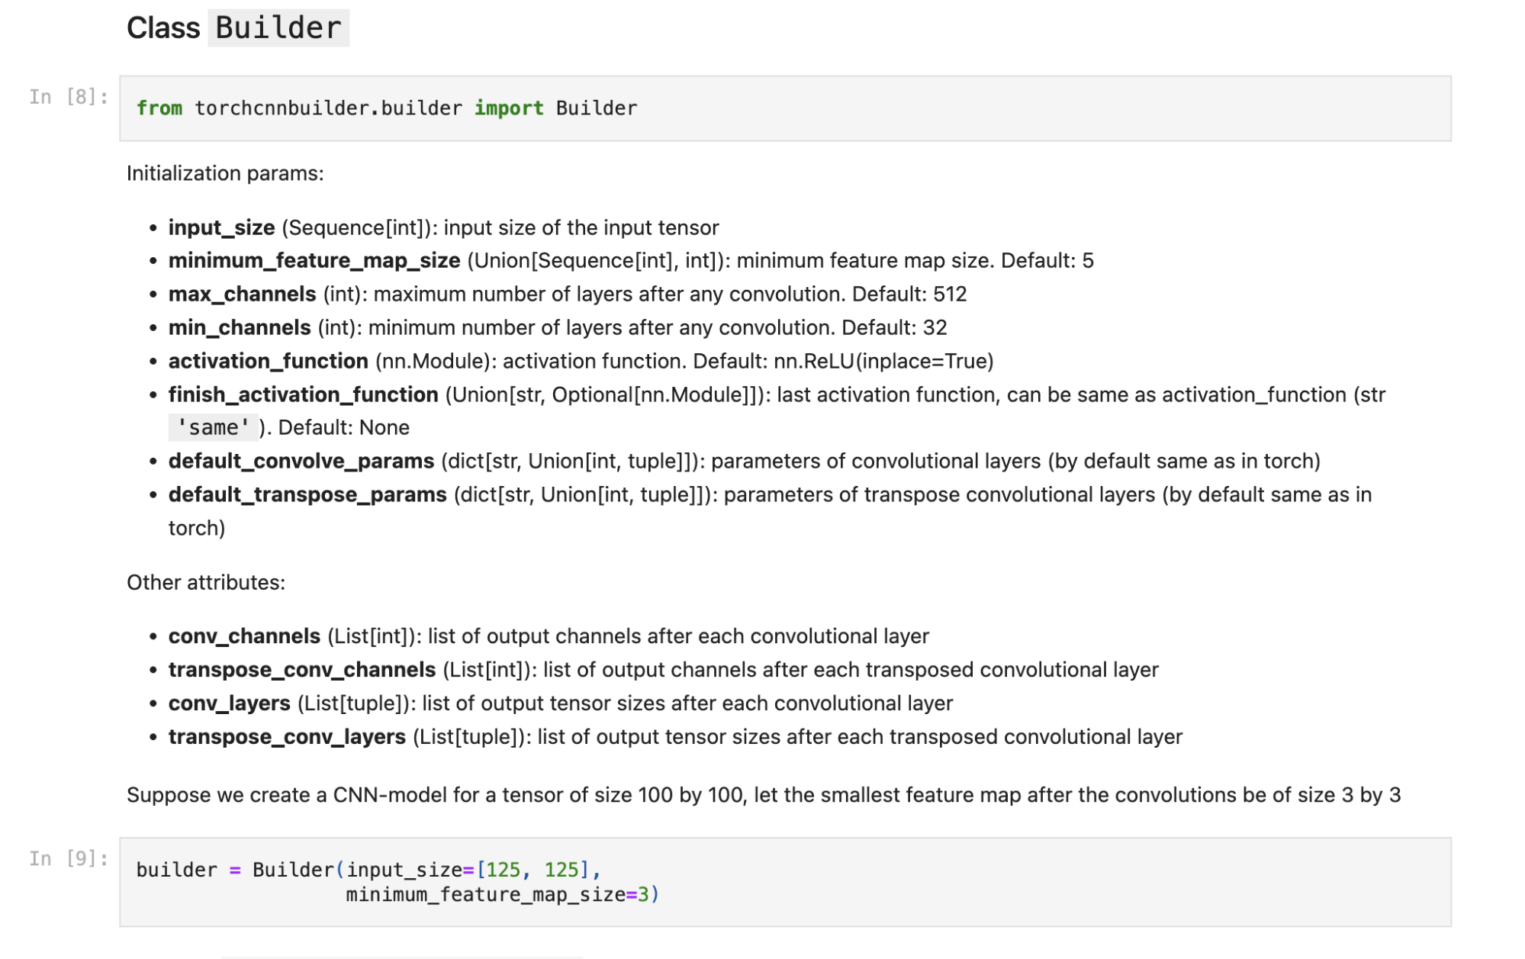 Пример документации атрибутов и параметров инициализации класса Builder.